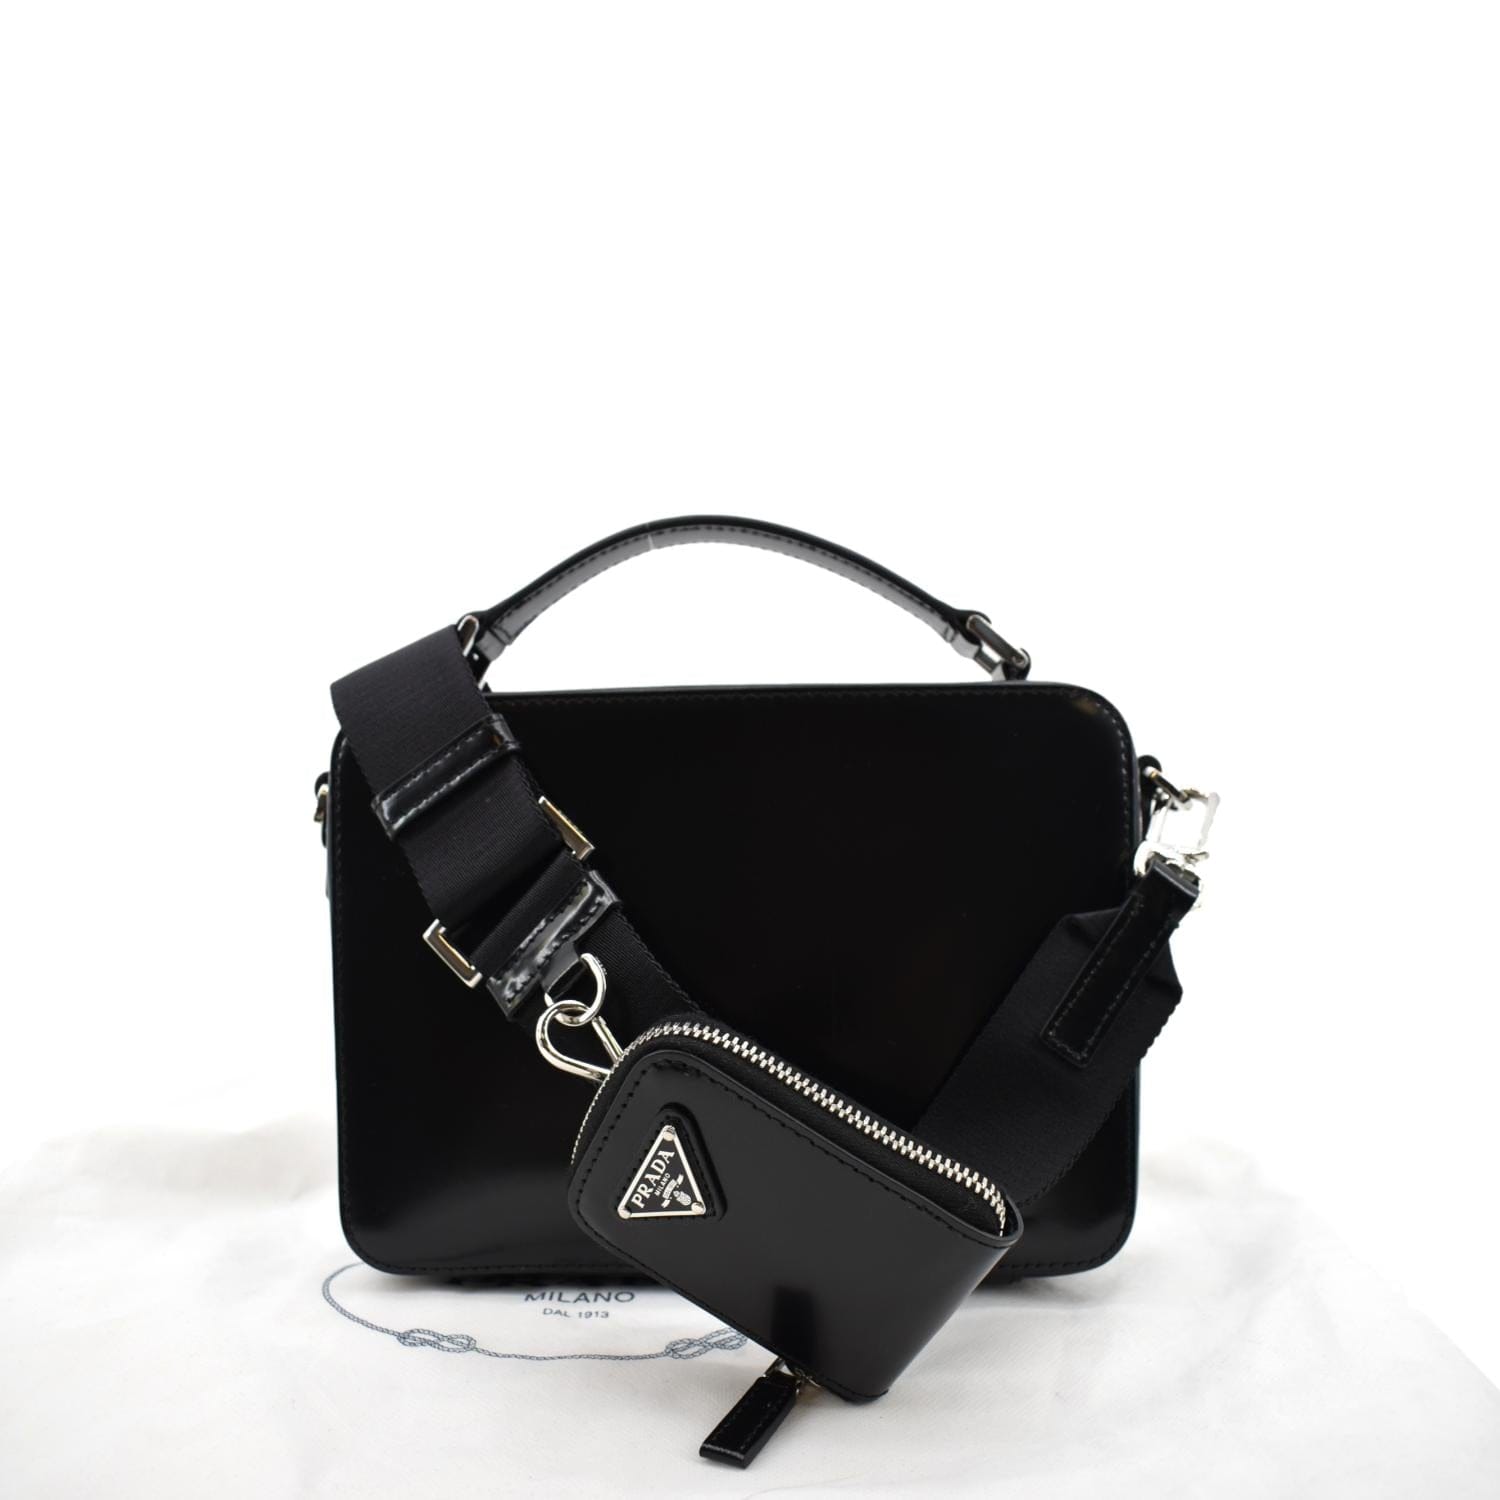 Prada Prada Brique Medium Saffiano Leather Crossbody Bag